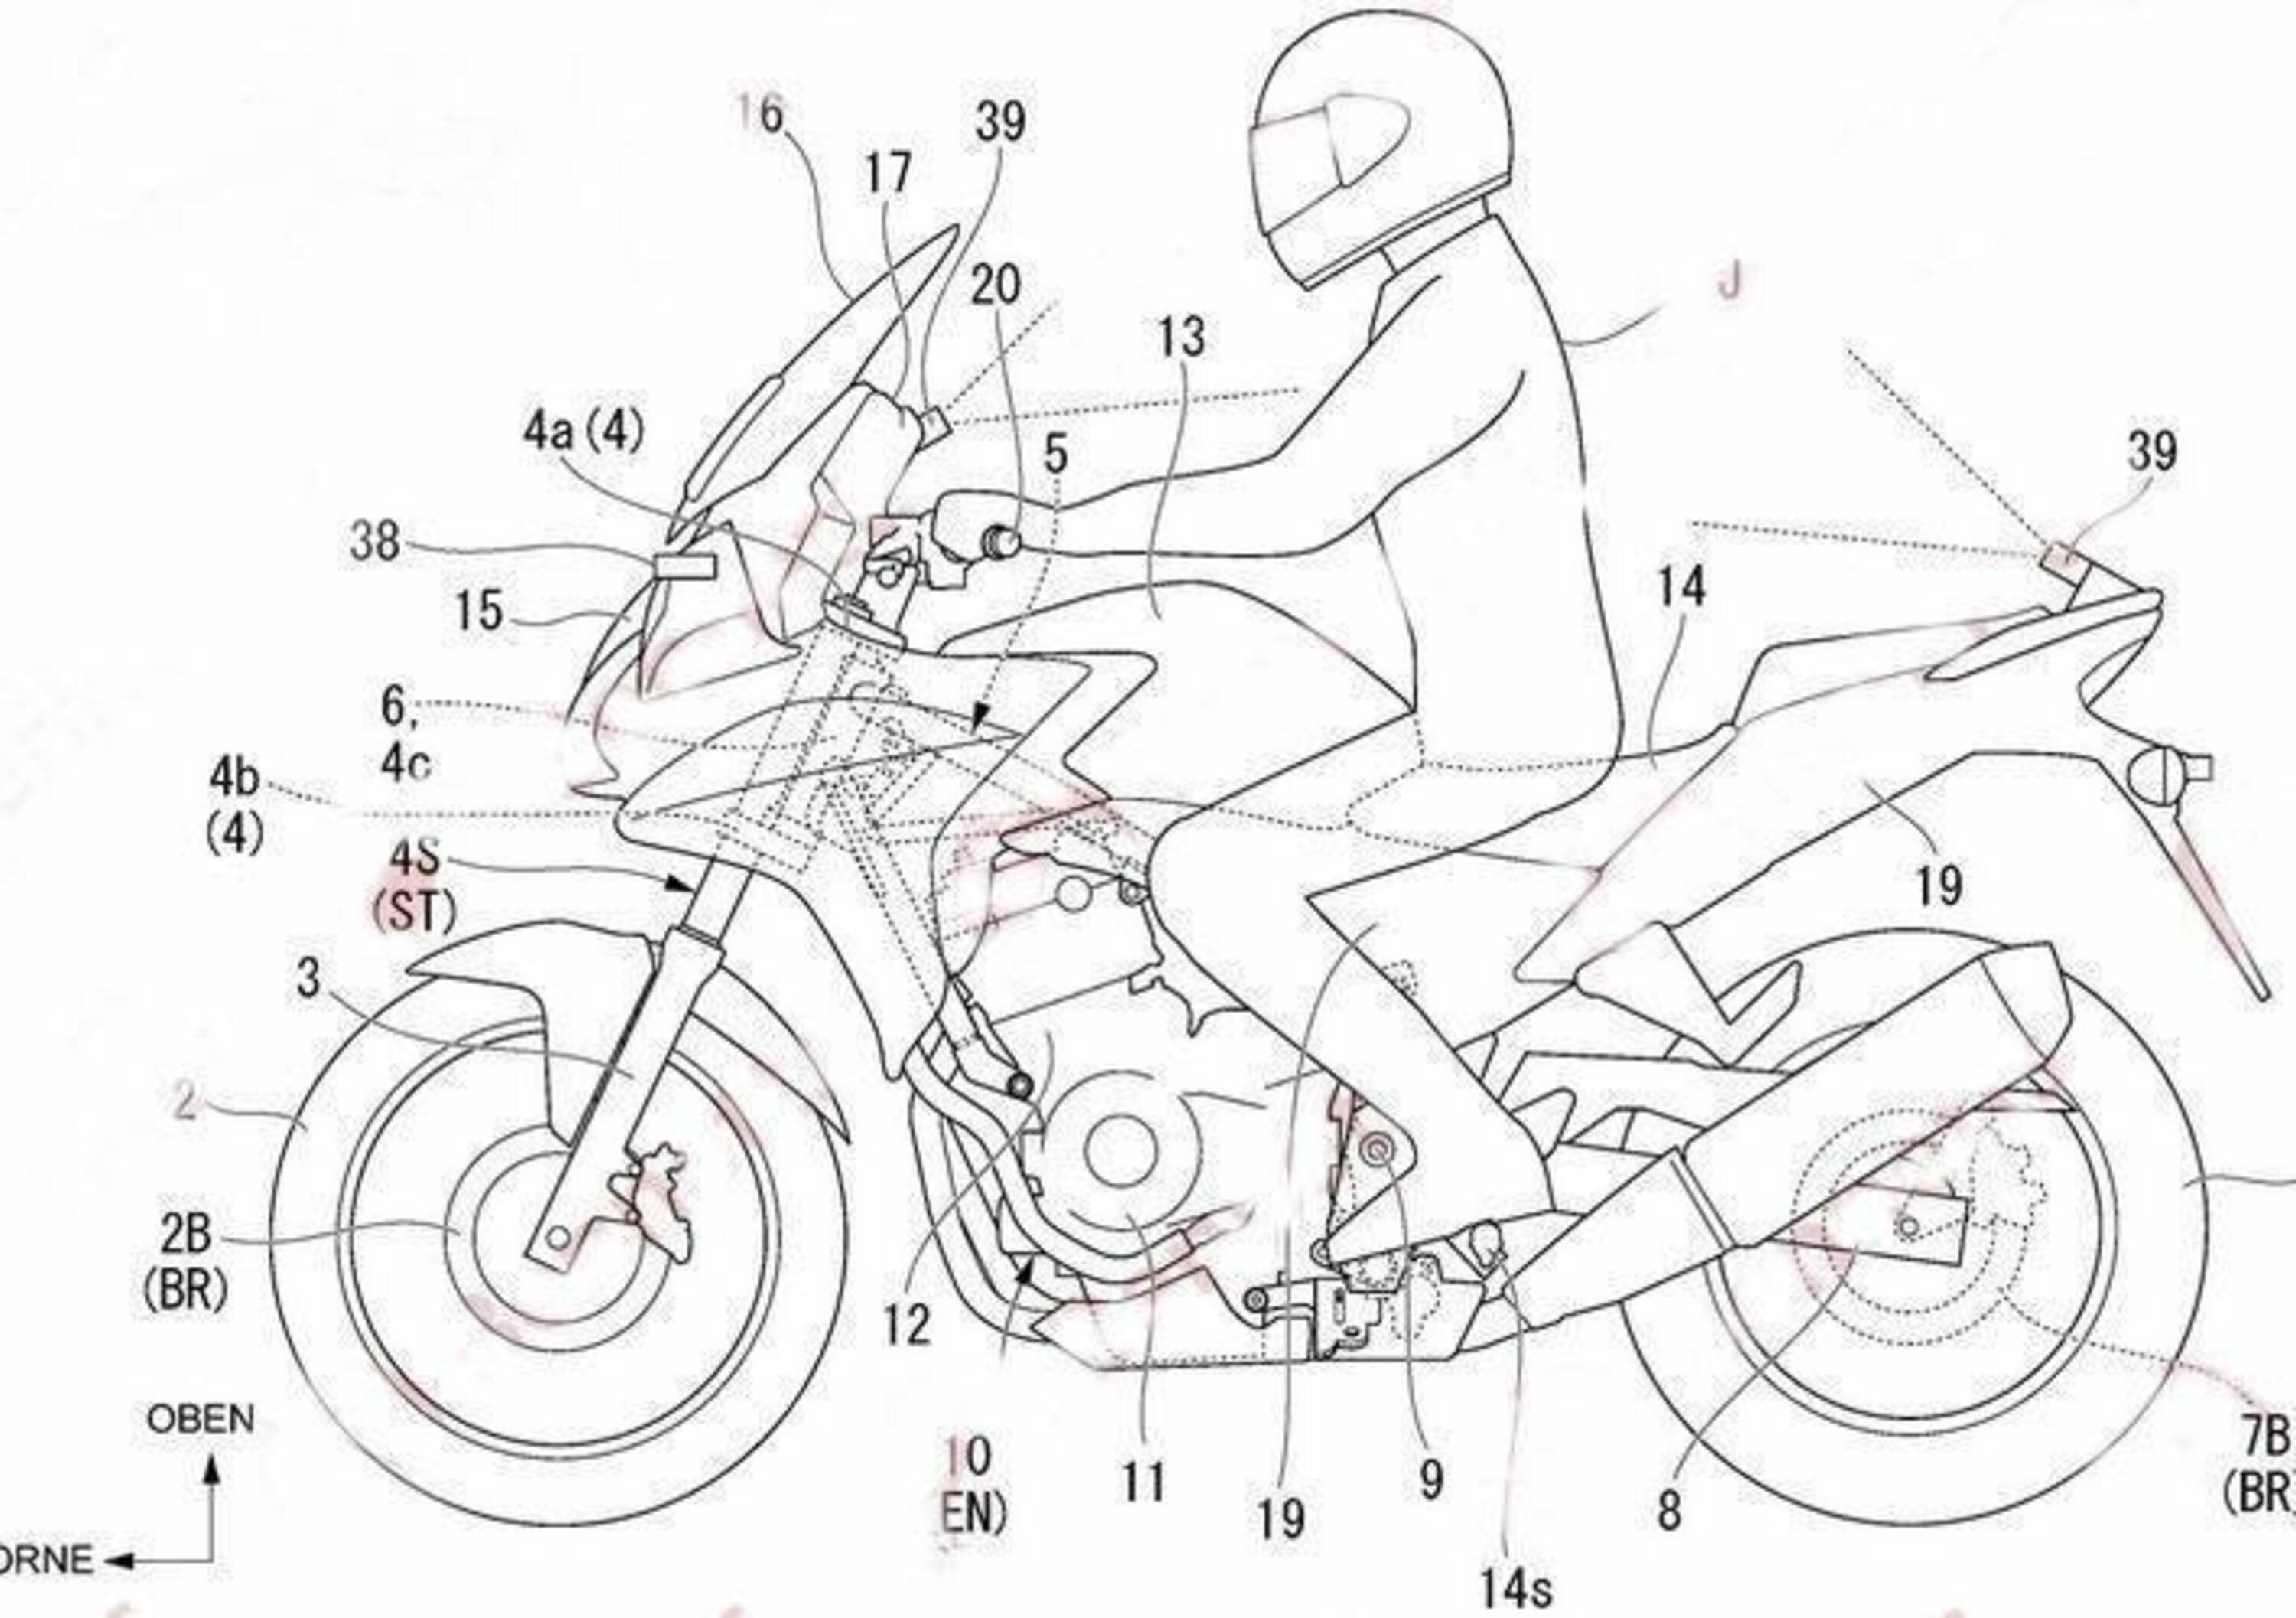 Honda brevetta un comando di sterzata autonoma